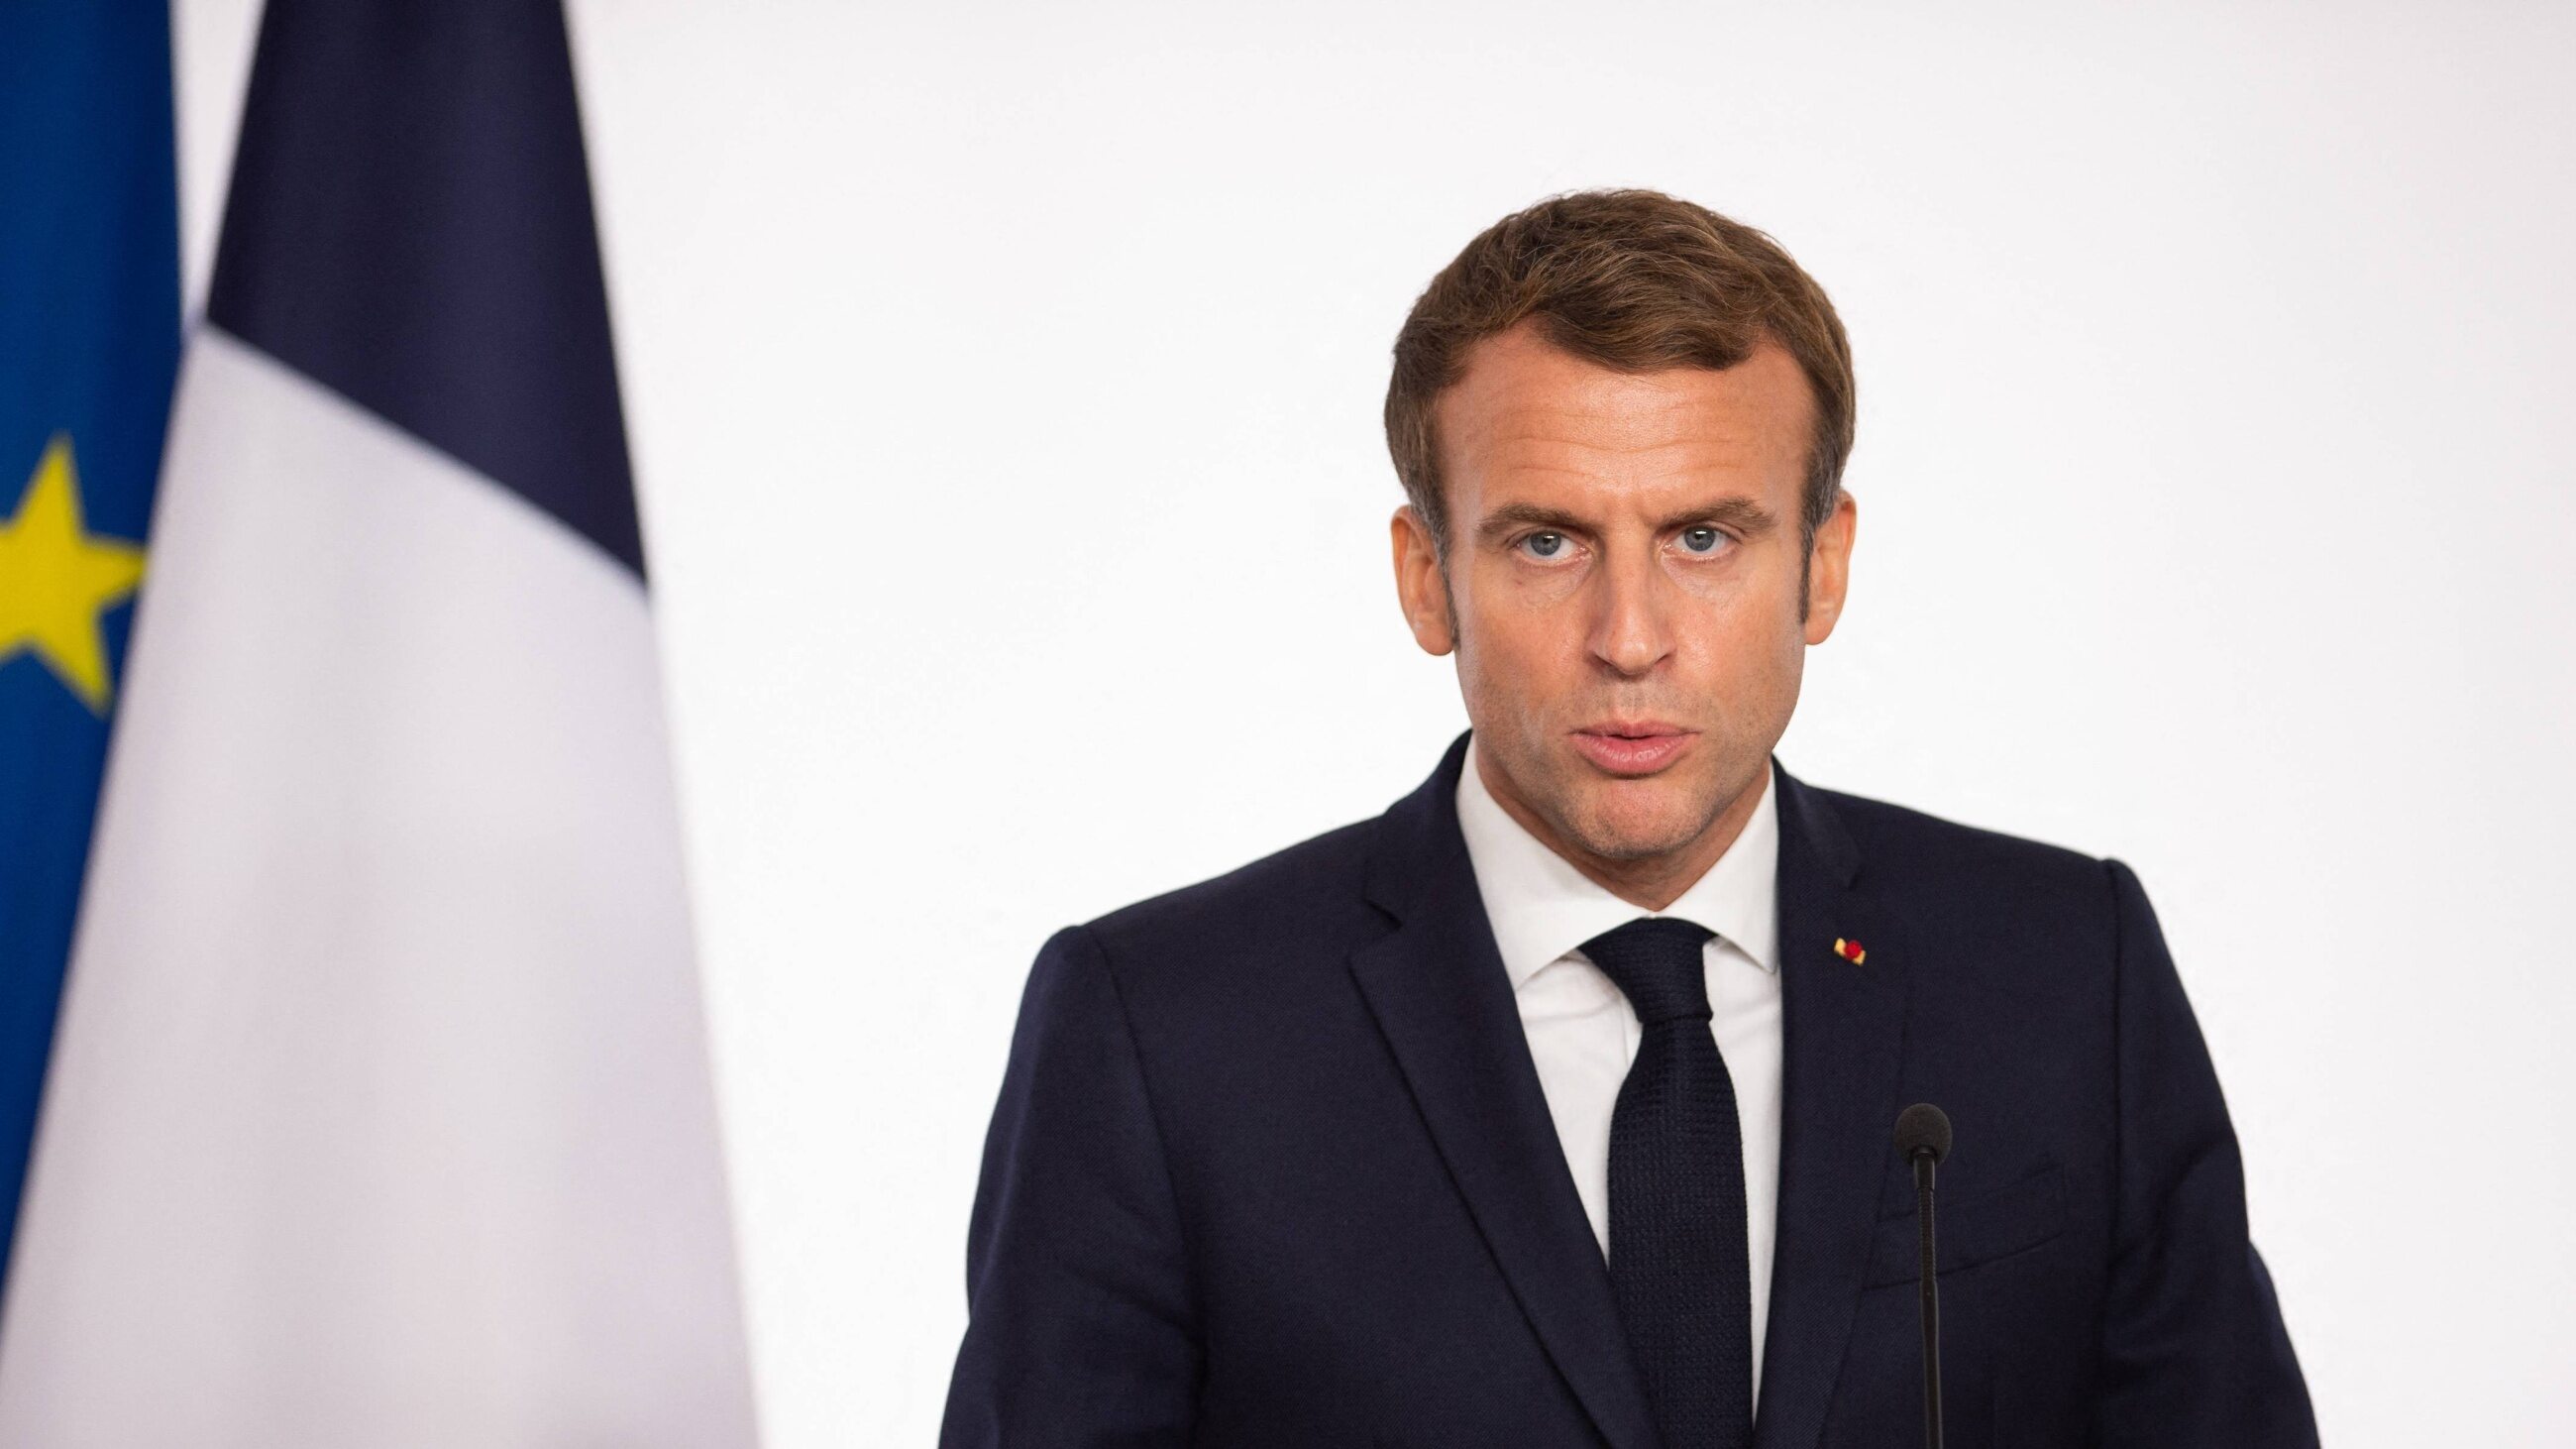 La France.  Le président a discrètement changé la couleur du drapeau national – Wprost